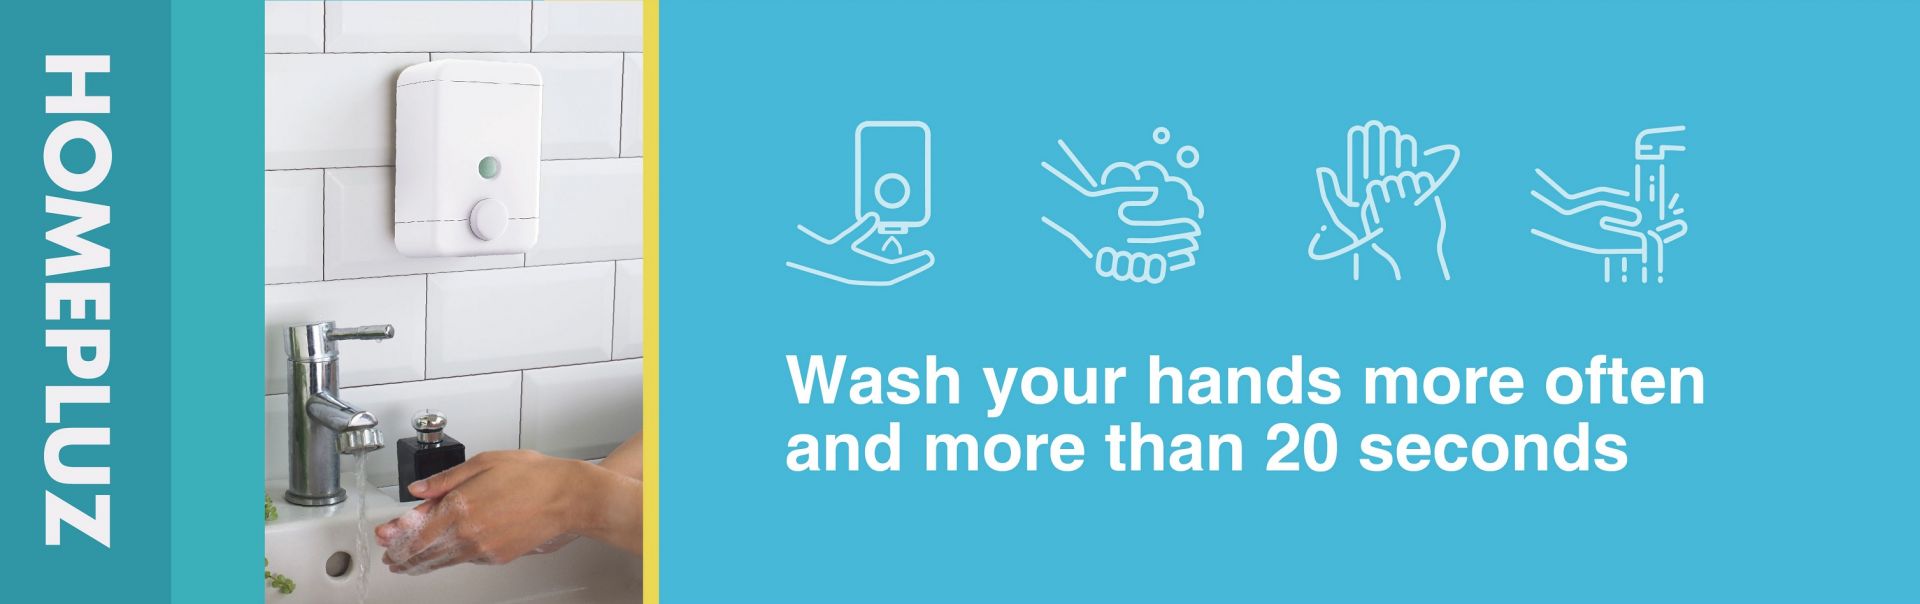 Handwashing to stay away from virus